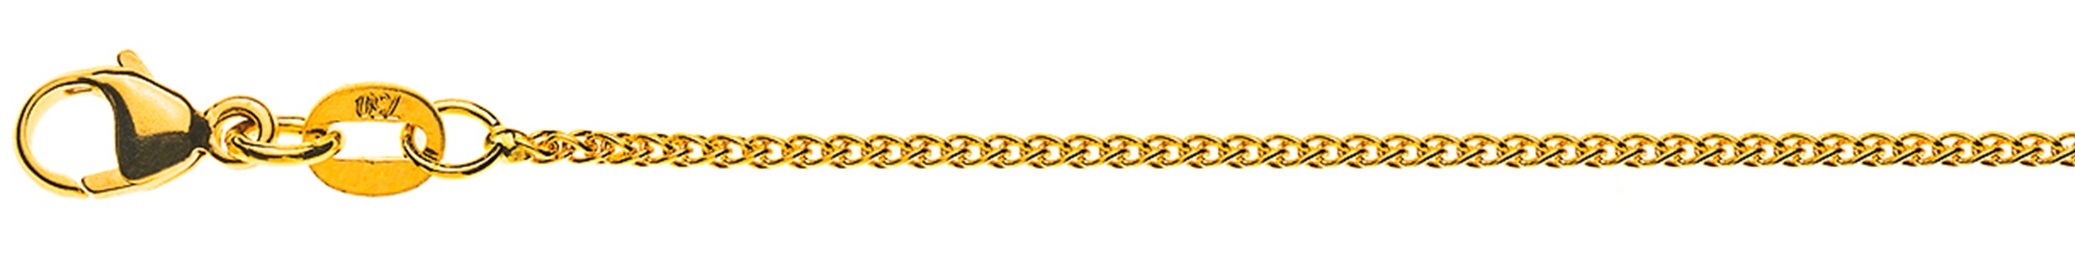 AURONOS Élégance Halskette Gelbgold 14K Zopfkette 40cm 1.2mm